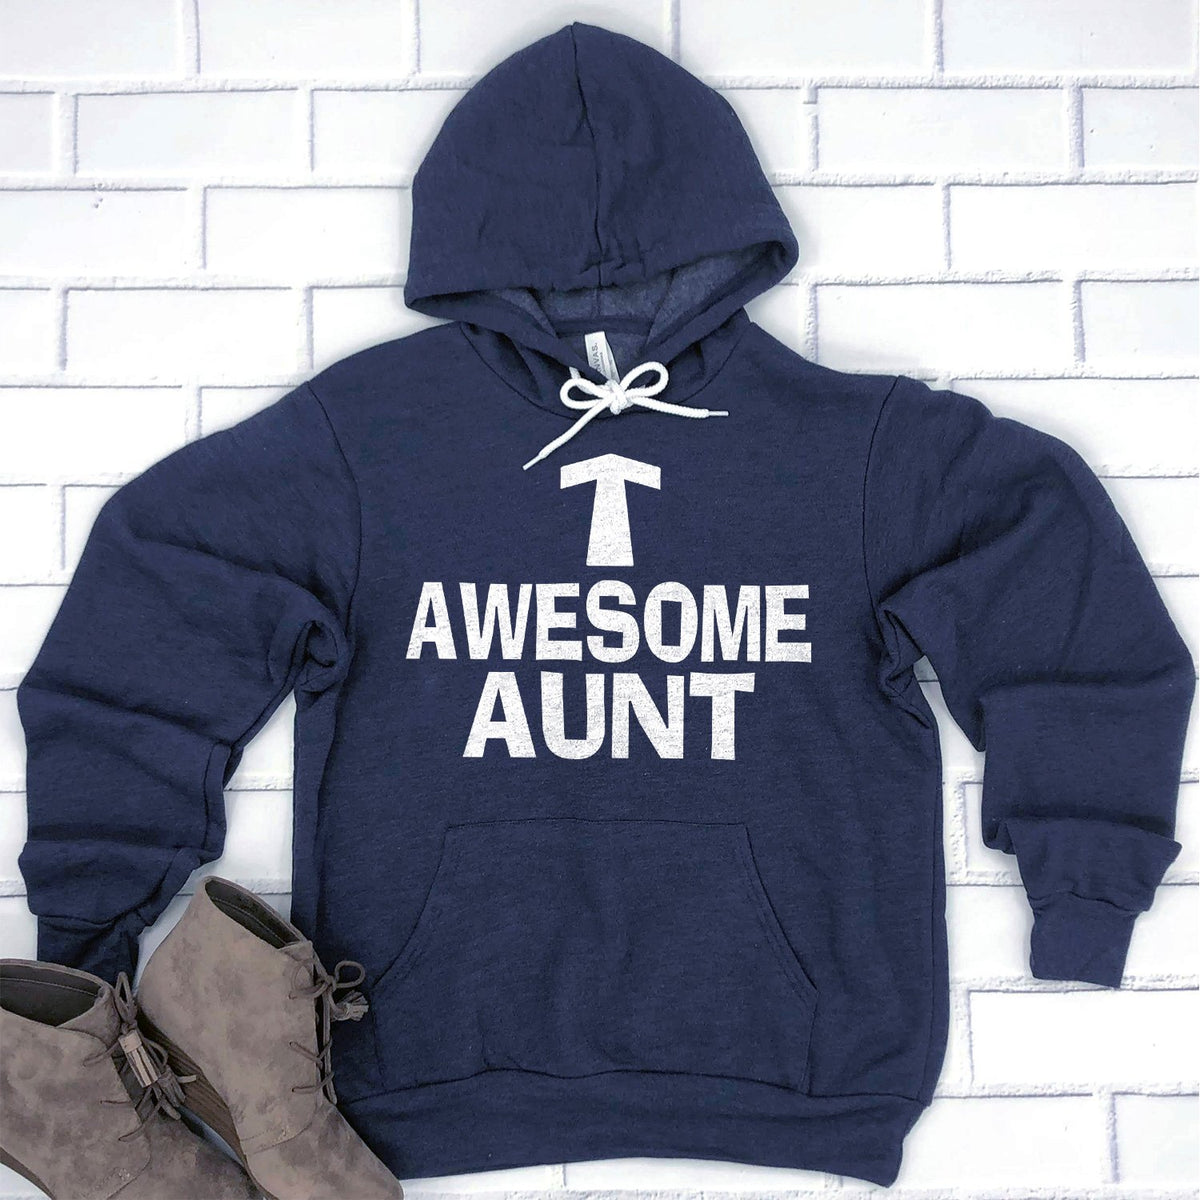 Awesome Aunt - Hoodie Sweatshirt